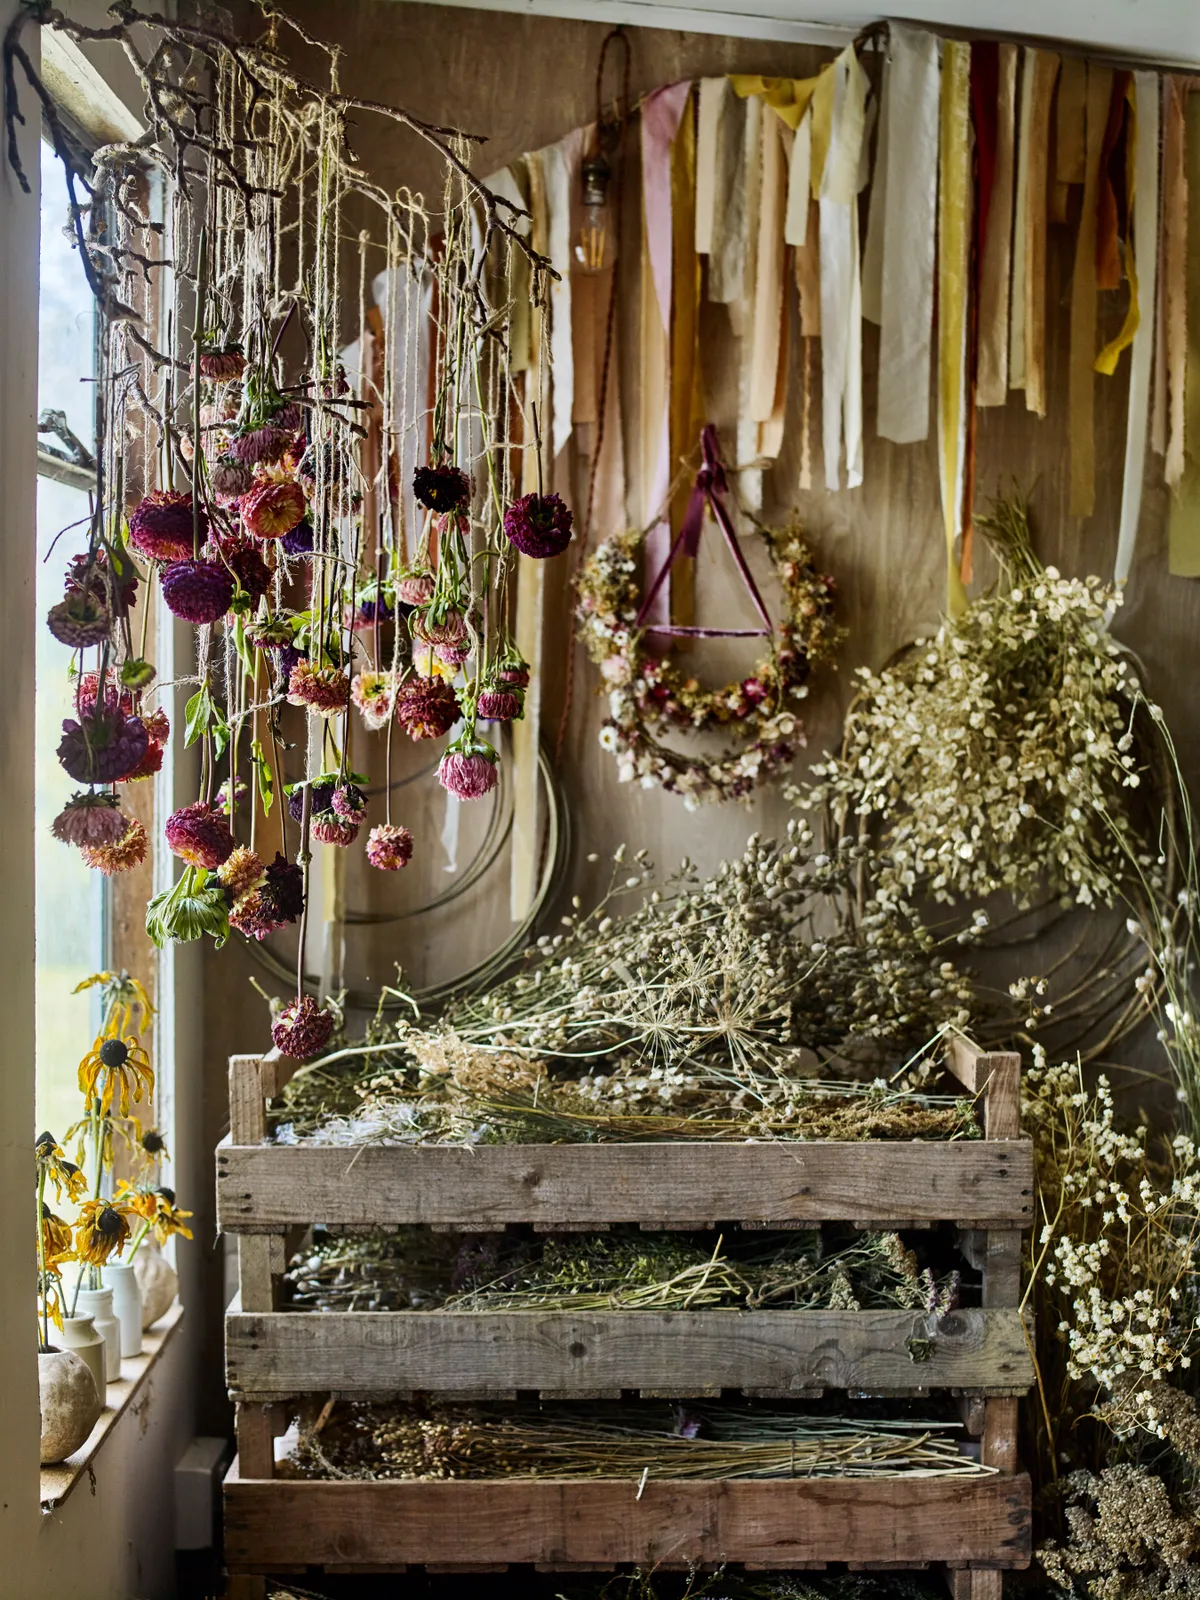 Bex's studio with hanging dahlias